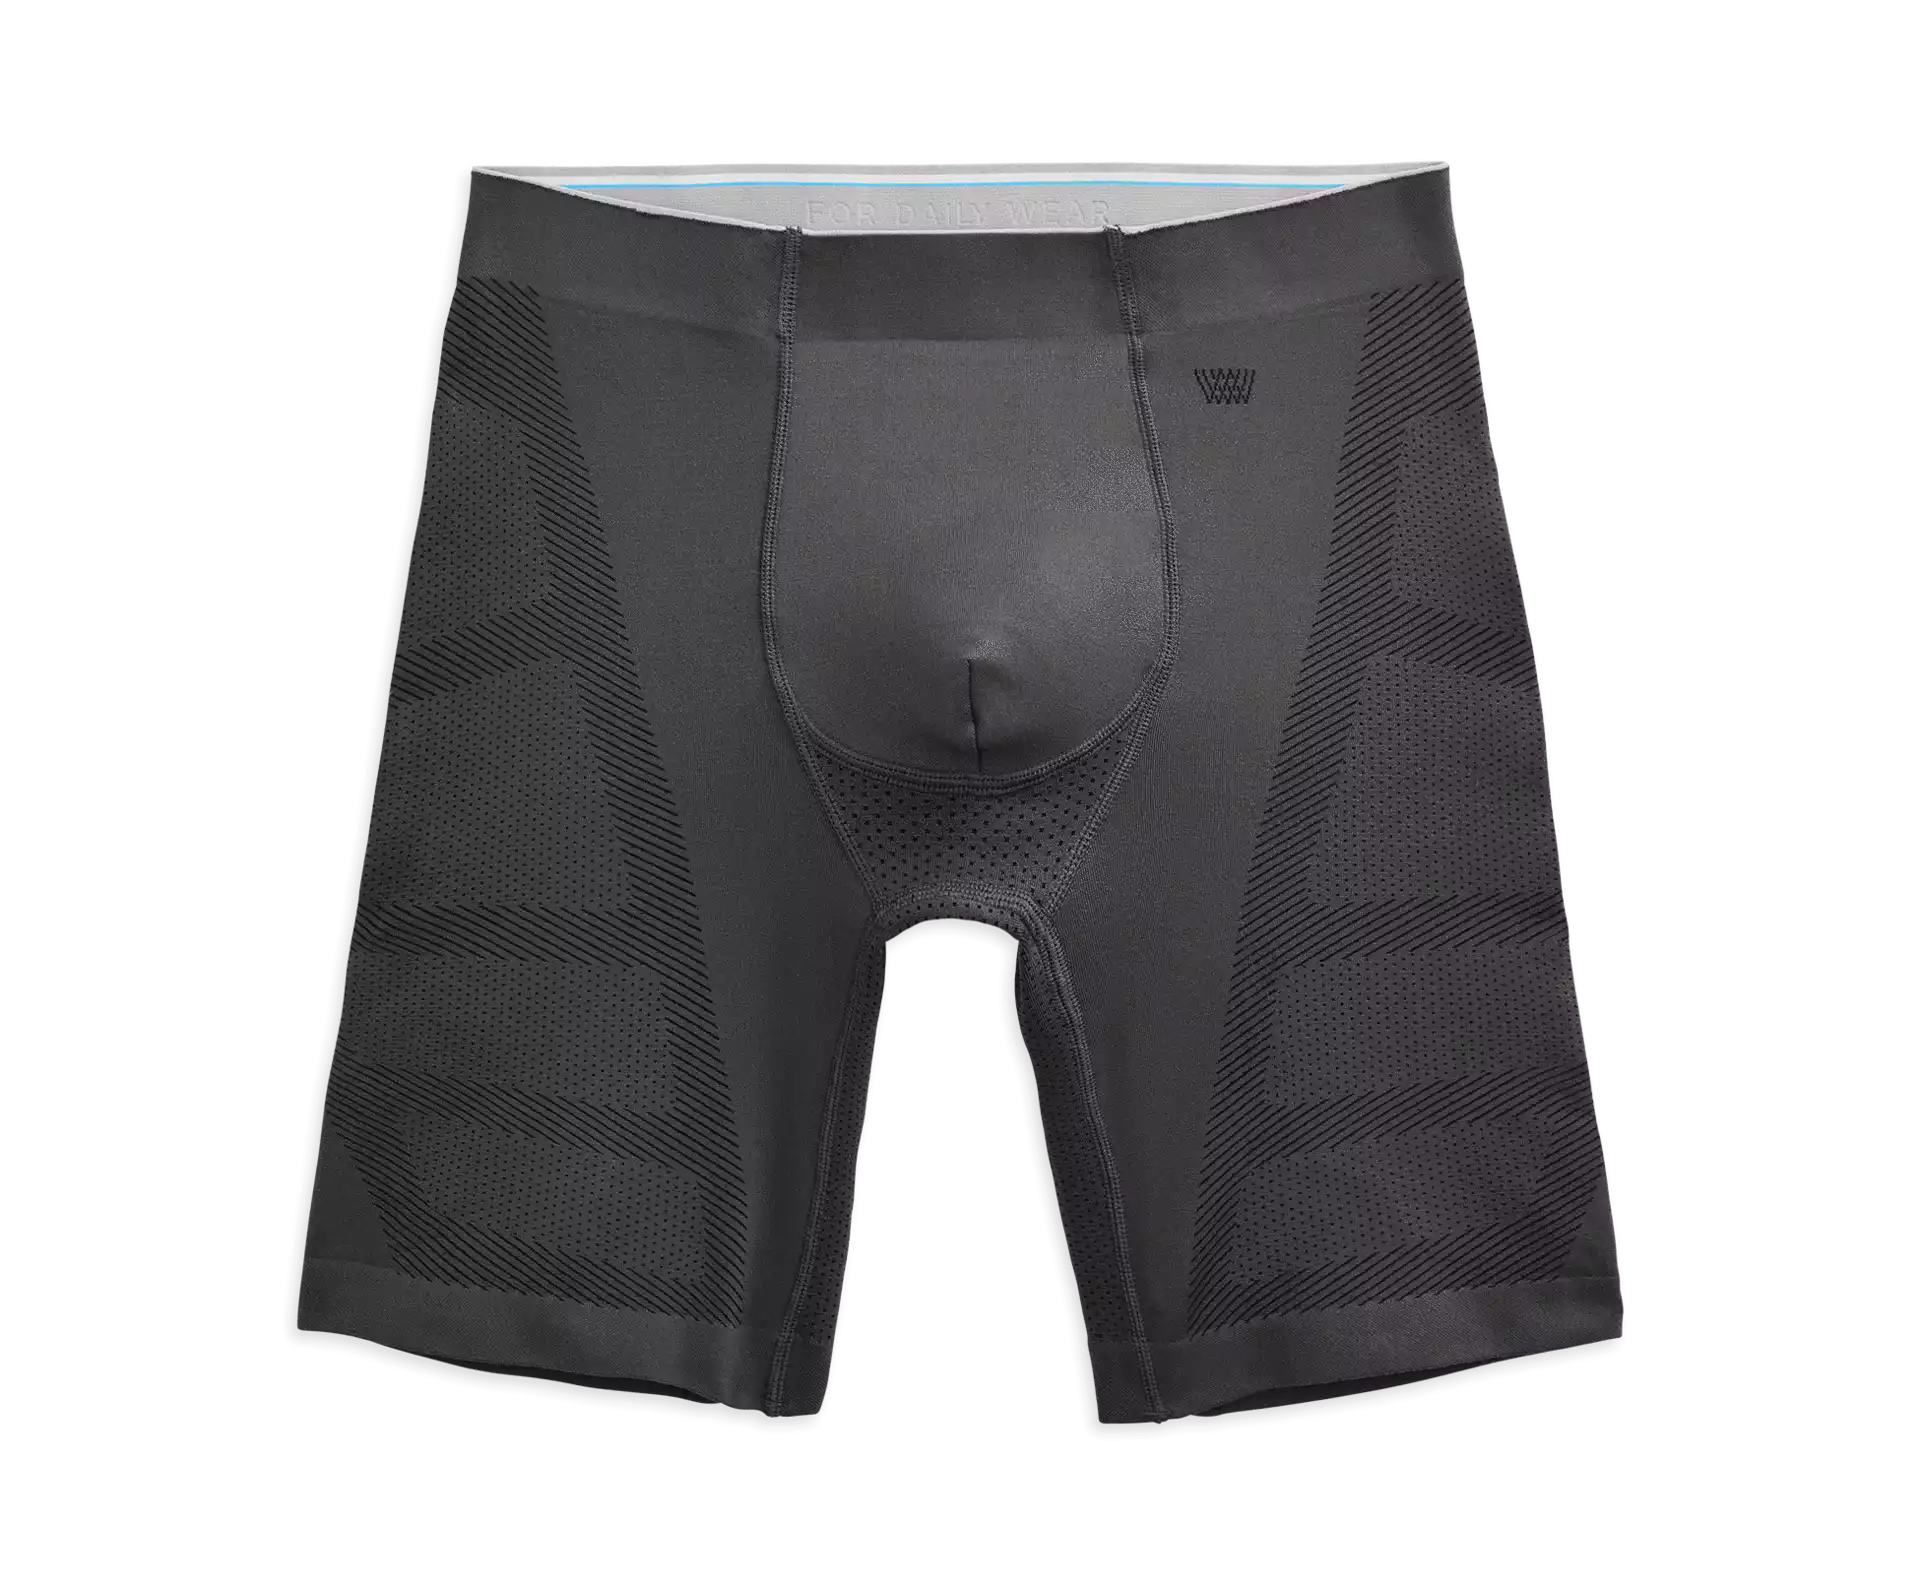 Mack Weldon Stealth Underwear